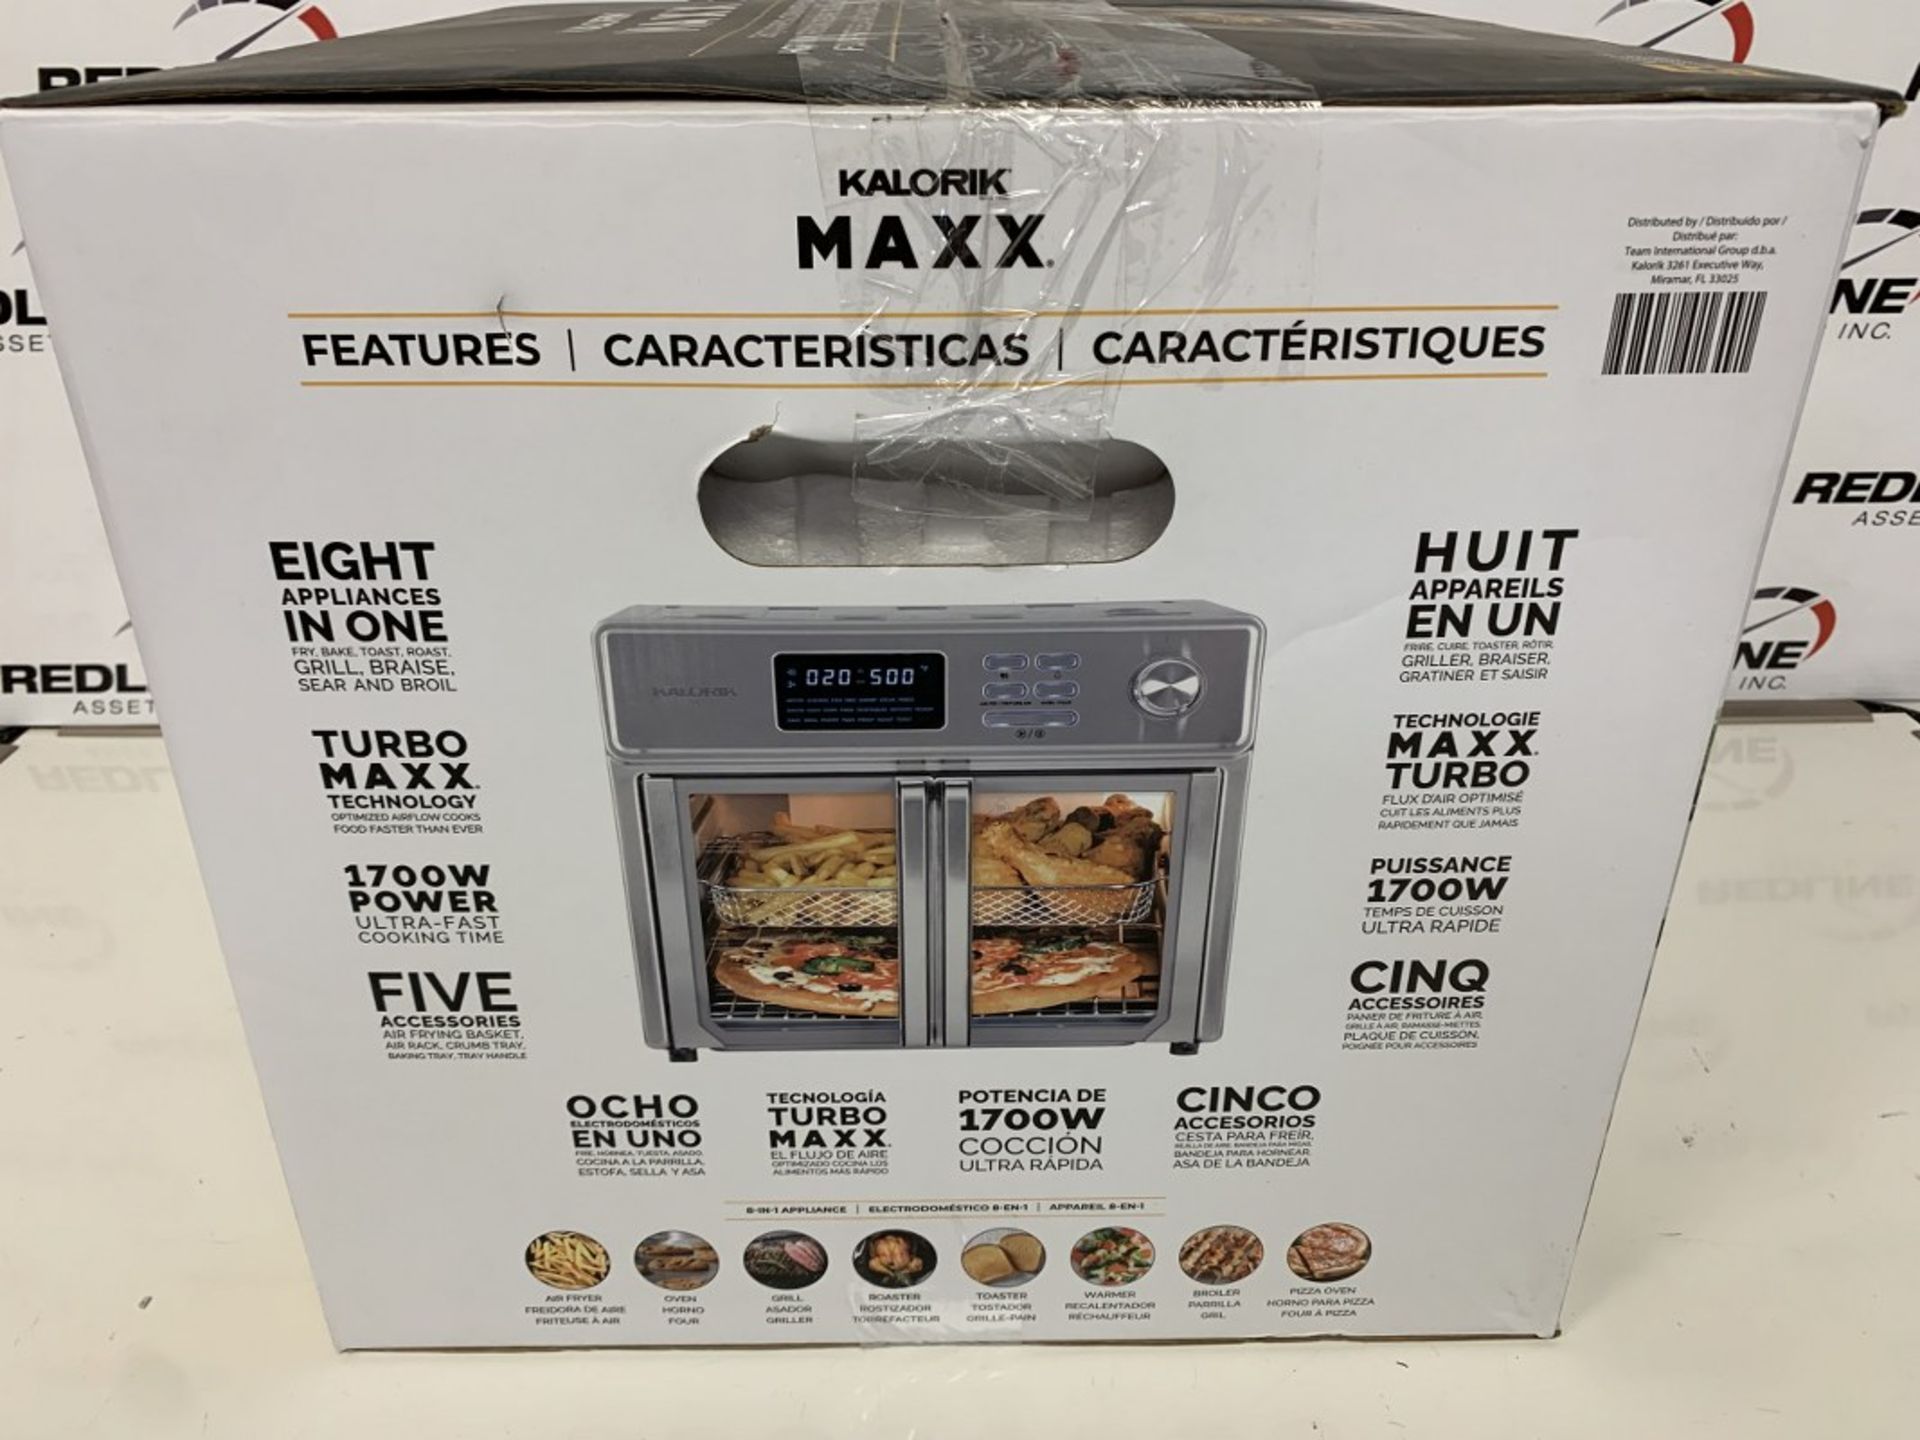 Kalorik - Maxx - 26Qt Air Fryer Oven - Image 2 of 2